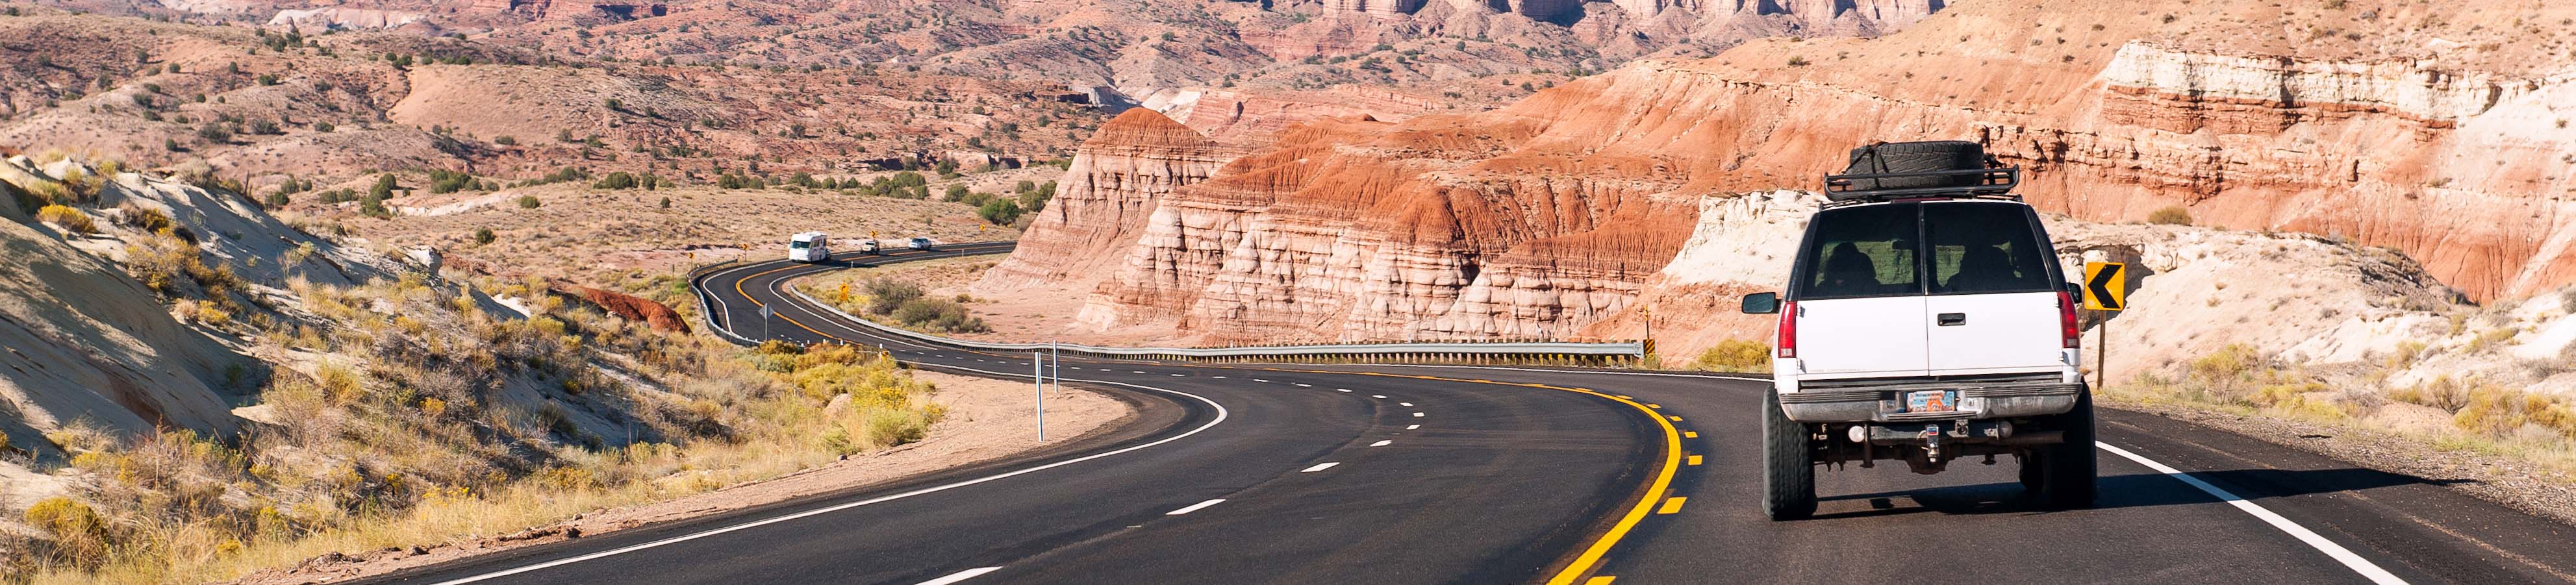 Roadtrip USA : comment le préparer pour profiter pleinement de votre road trip